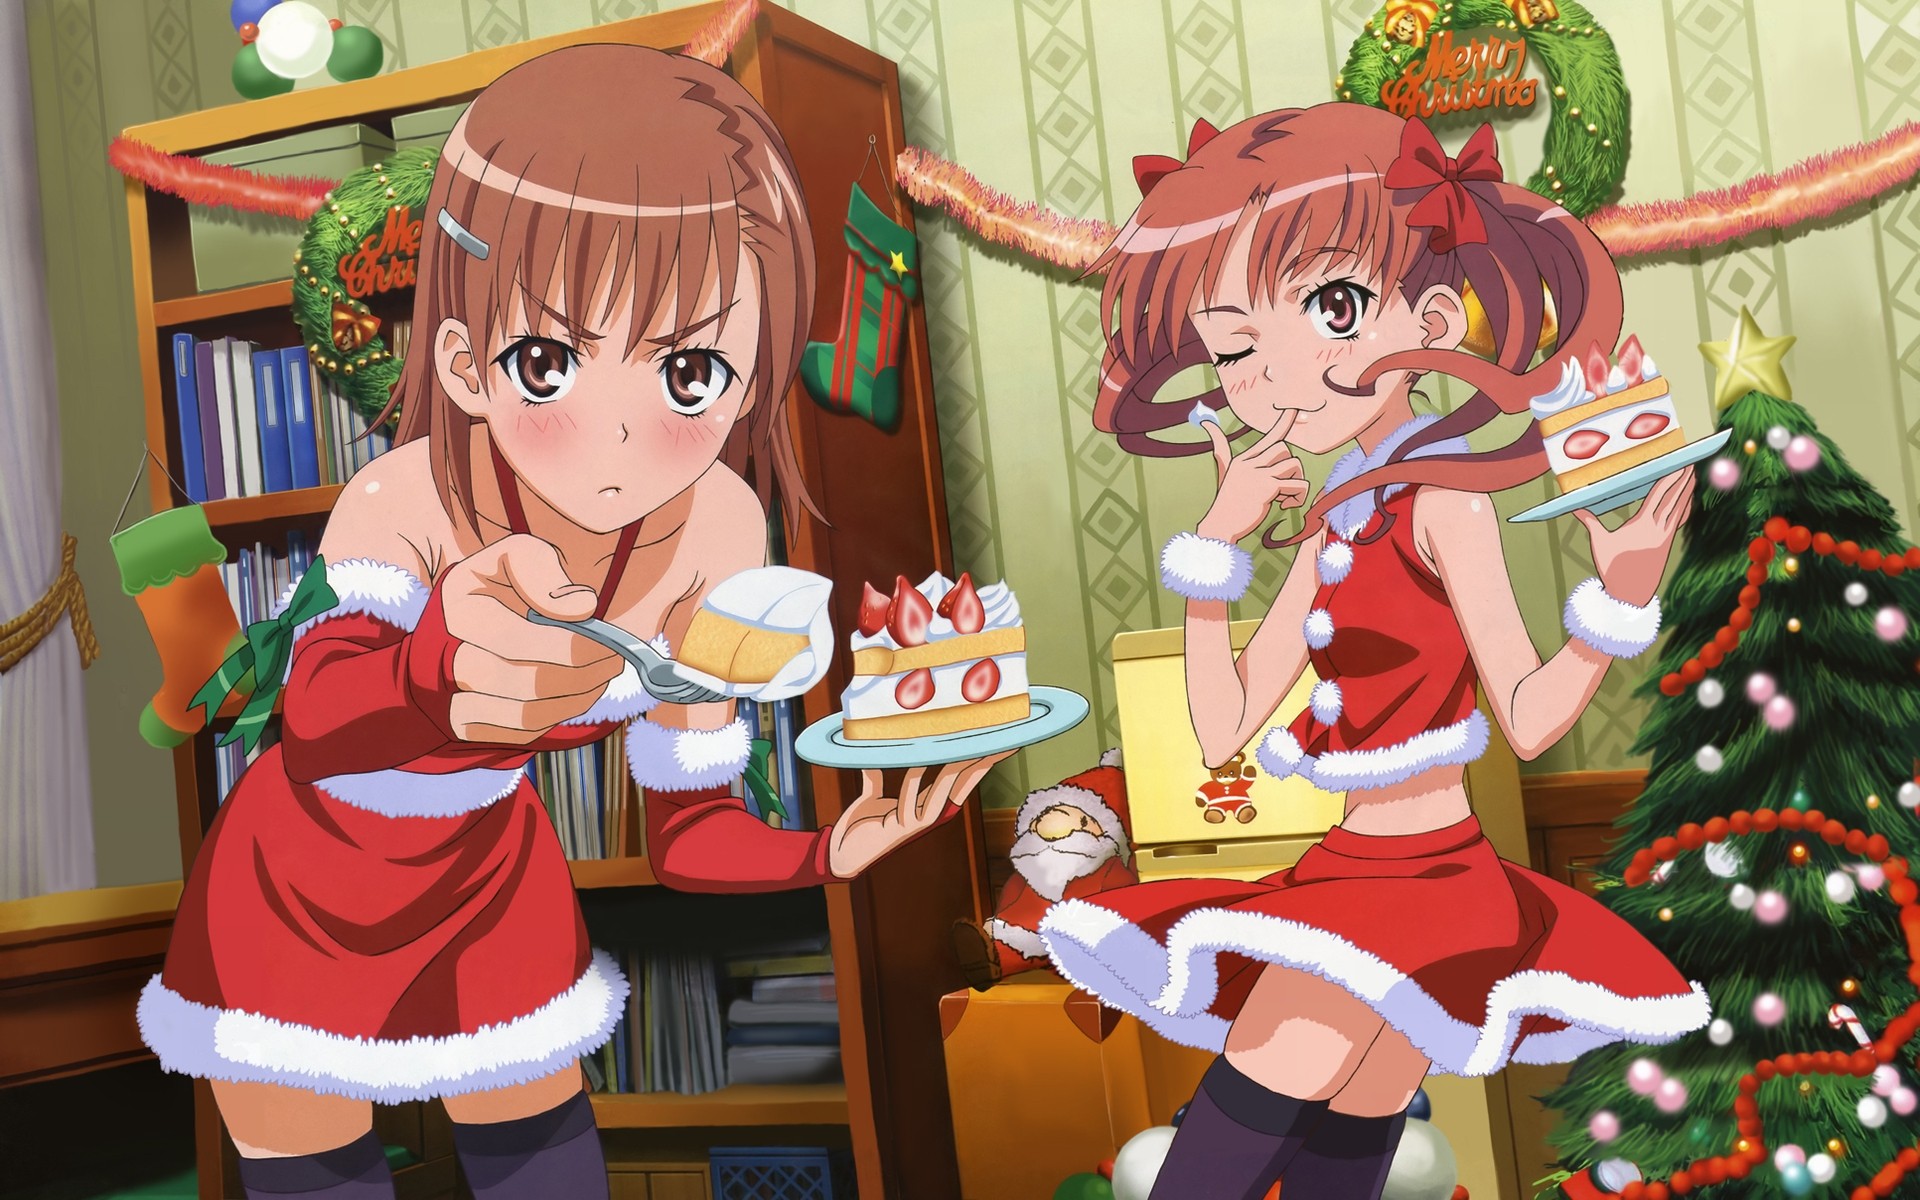 Anime 1920x1200 anime Christmas To Aru Kagaku no Railgun To aru Majutsu no Index Misaka Mikoto Shirai Kuroko anime girls food sweets cake Santa costume anime girls eating